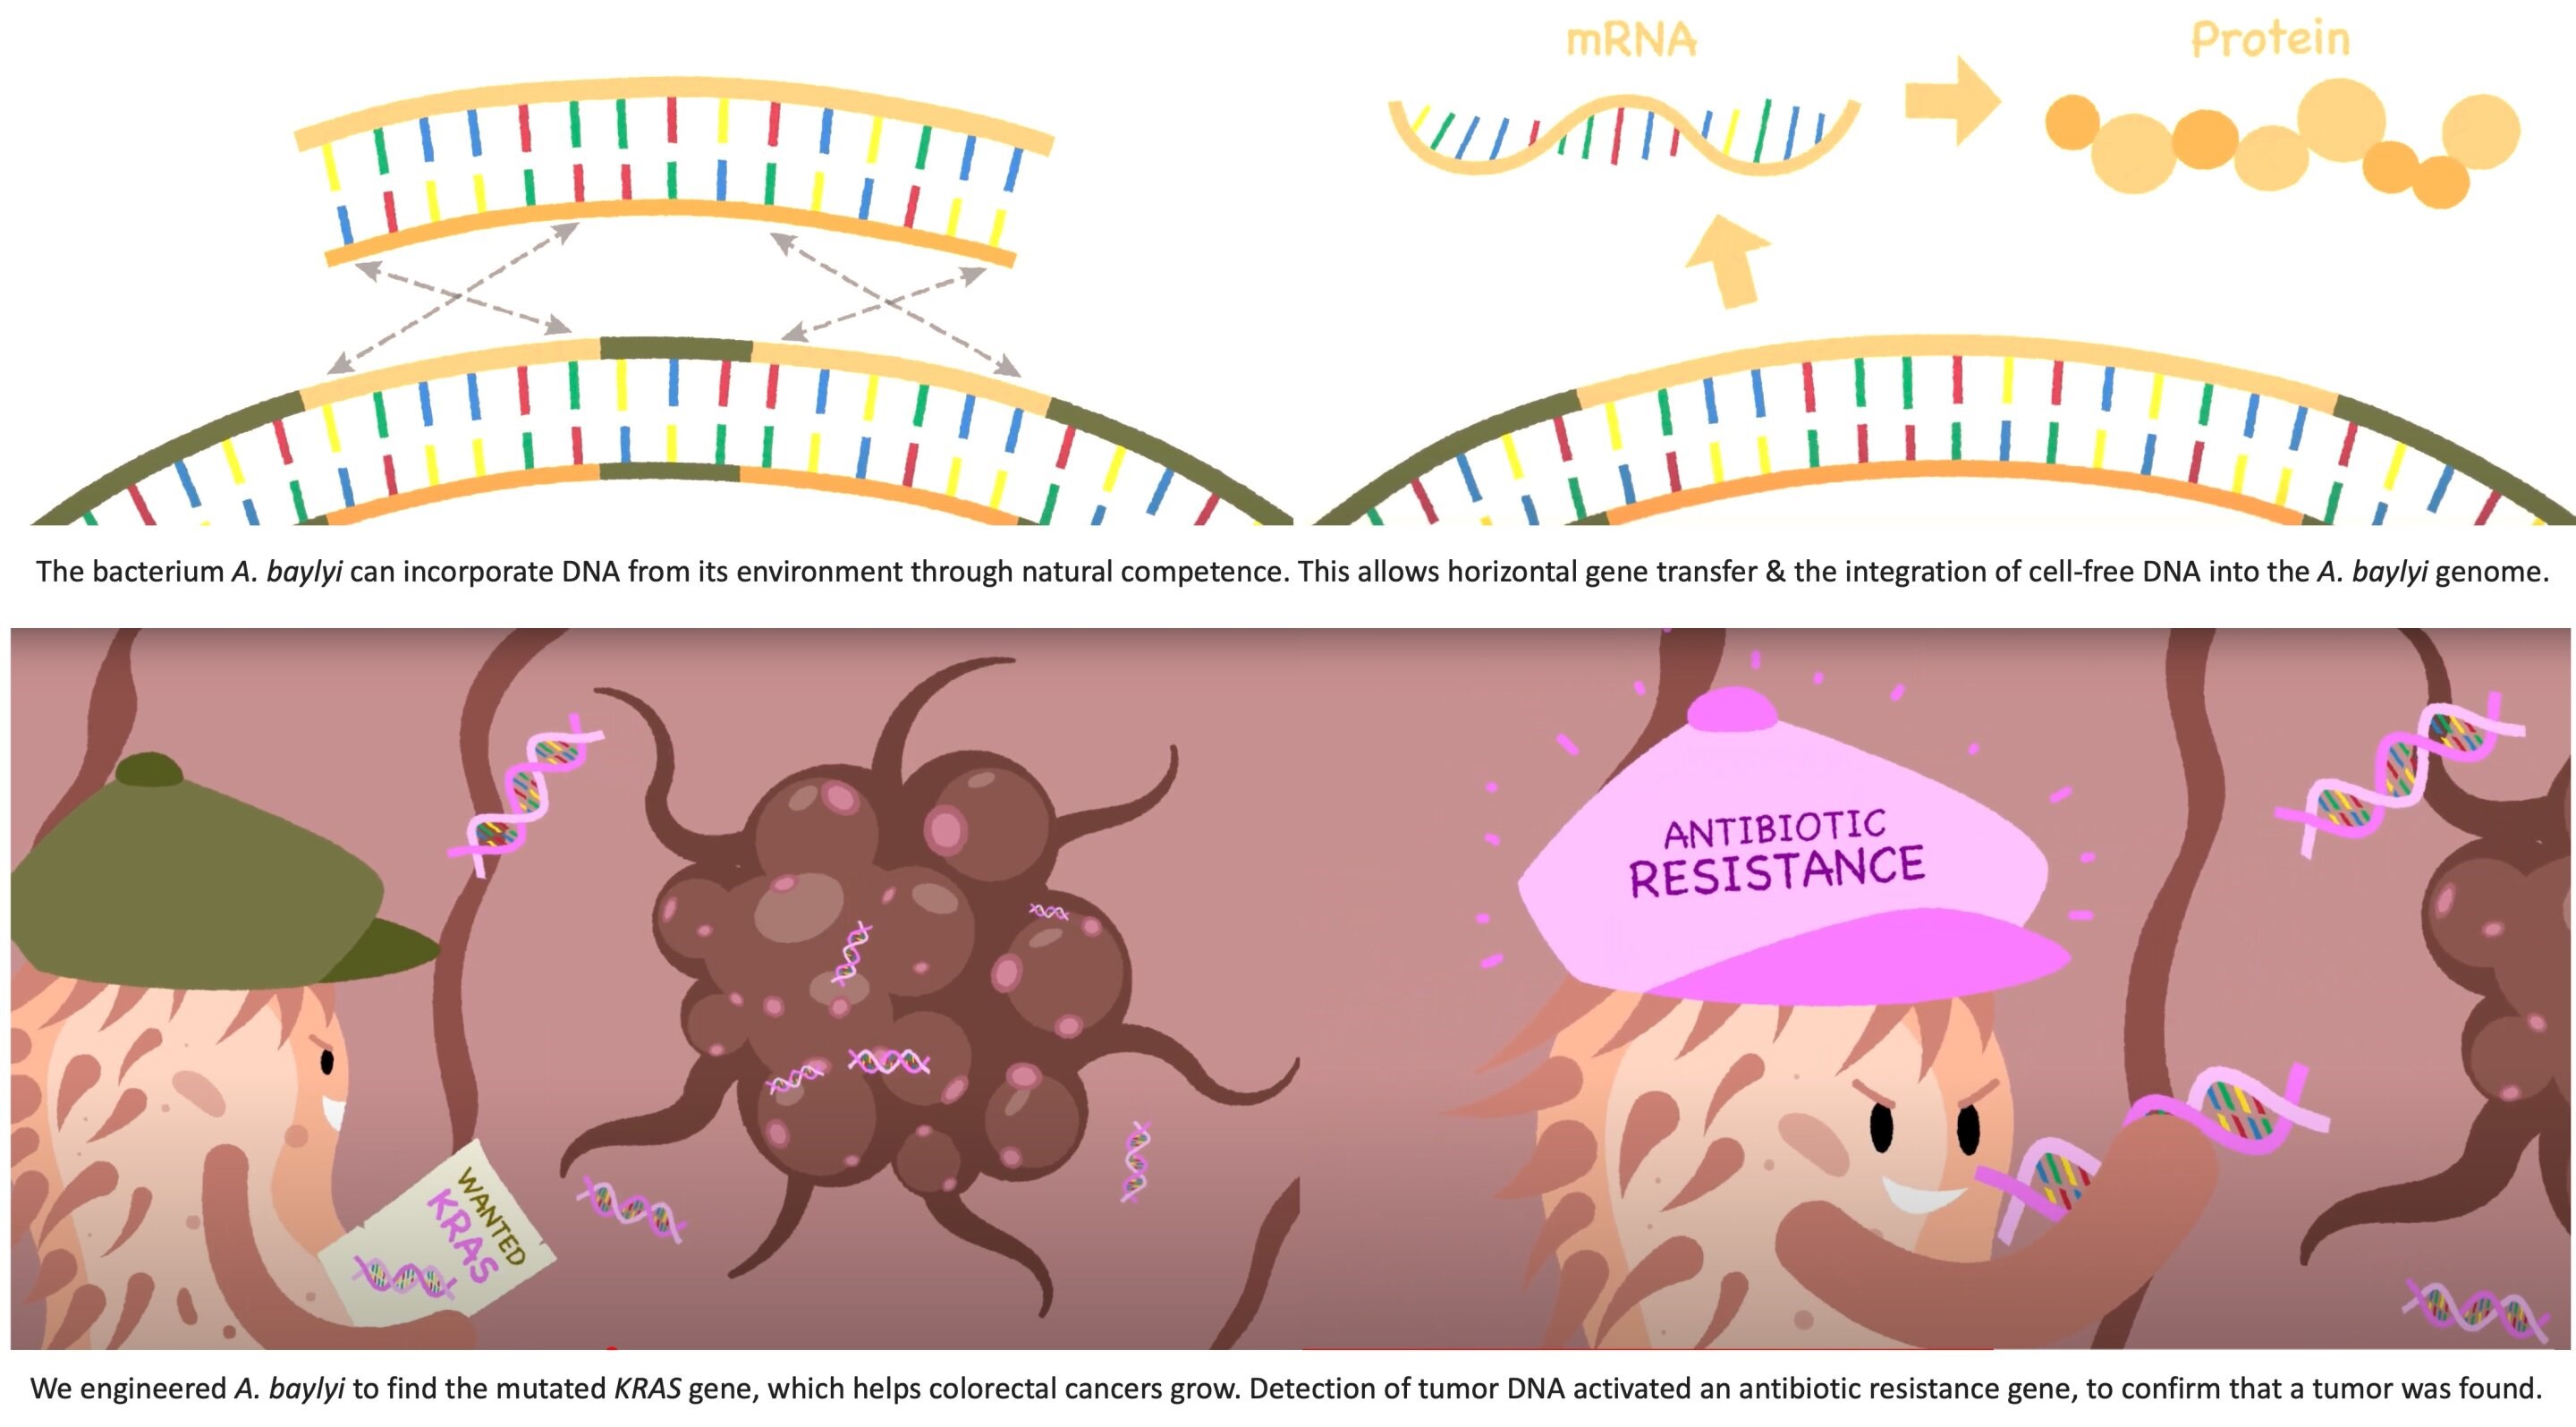 Kanser hücrelerini tespit etmek için bakteriler geliştirildi